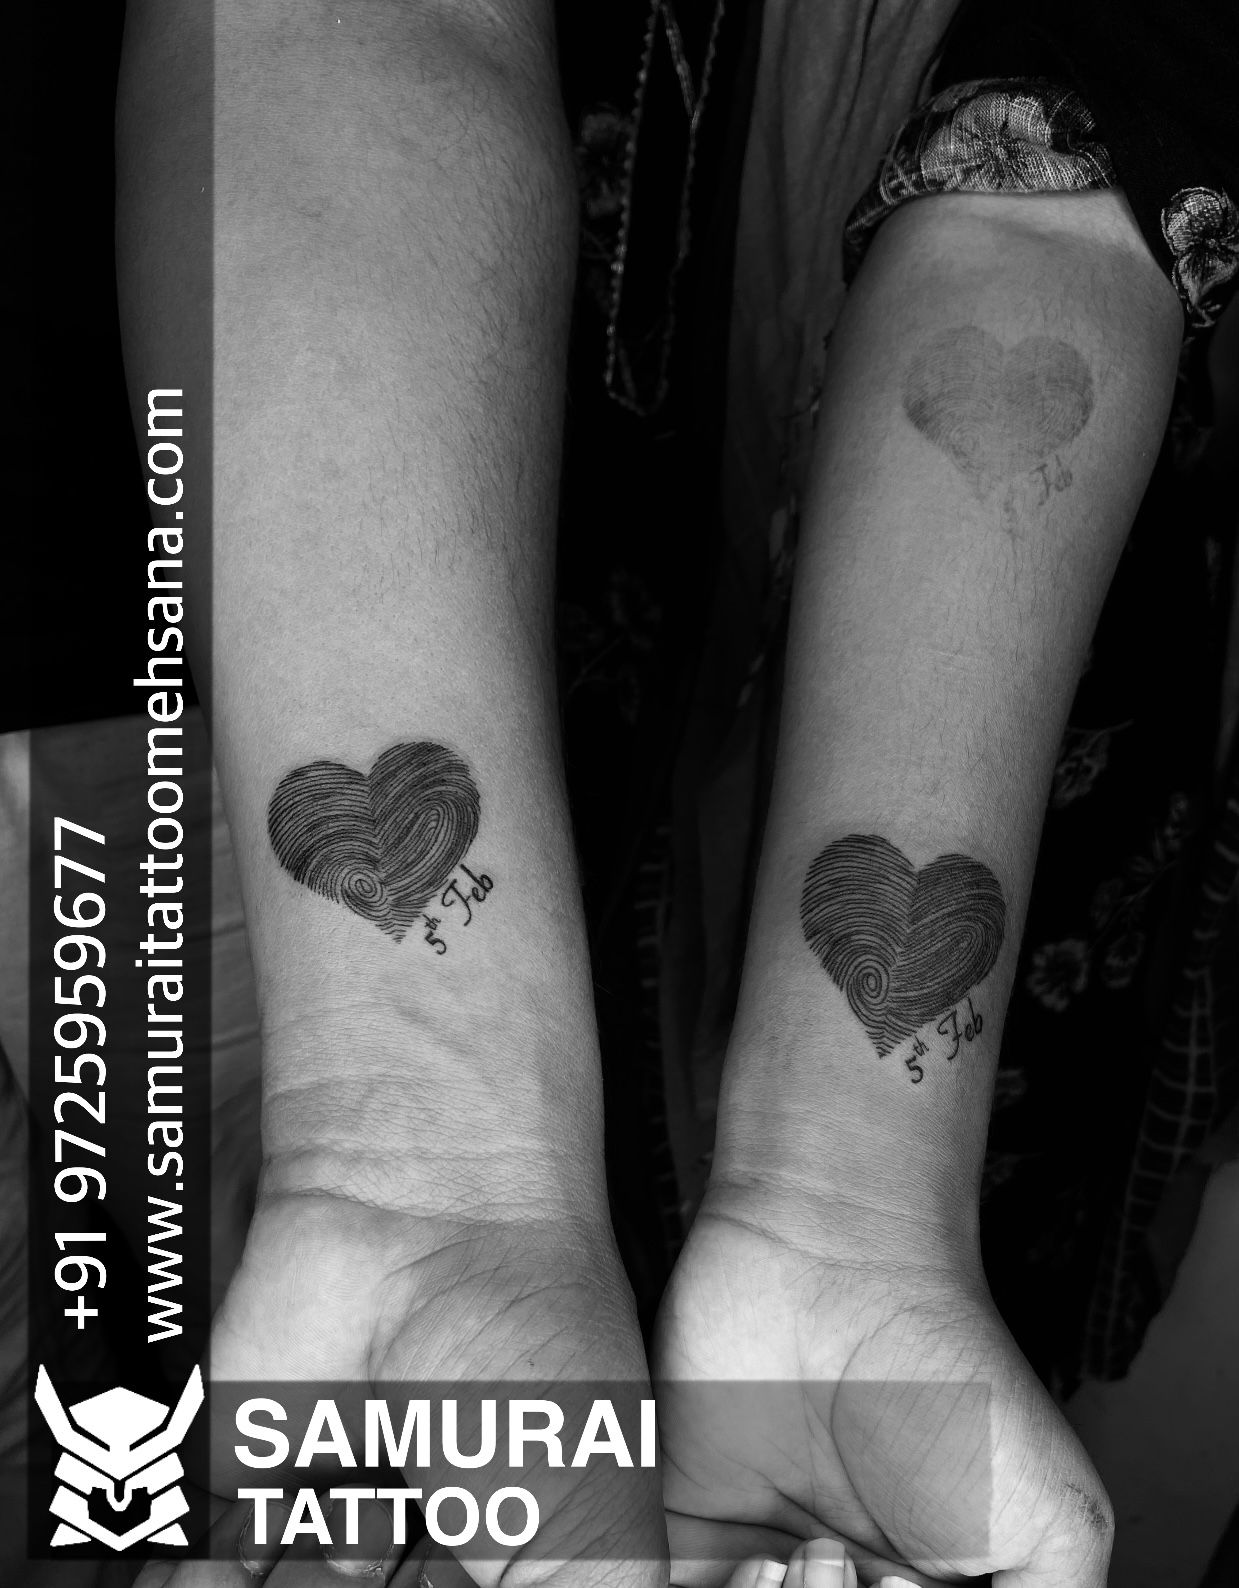 Fingerprint couple tattoo   fingerprinttattoo coupletattoos  girlstattoo handtattoos lovetattoo smalltattoos tinytattoos   Instagram